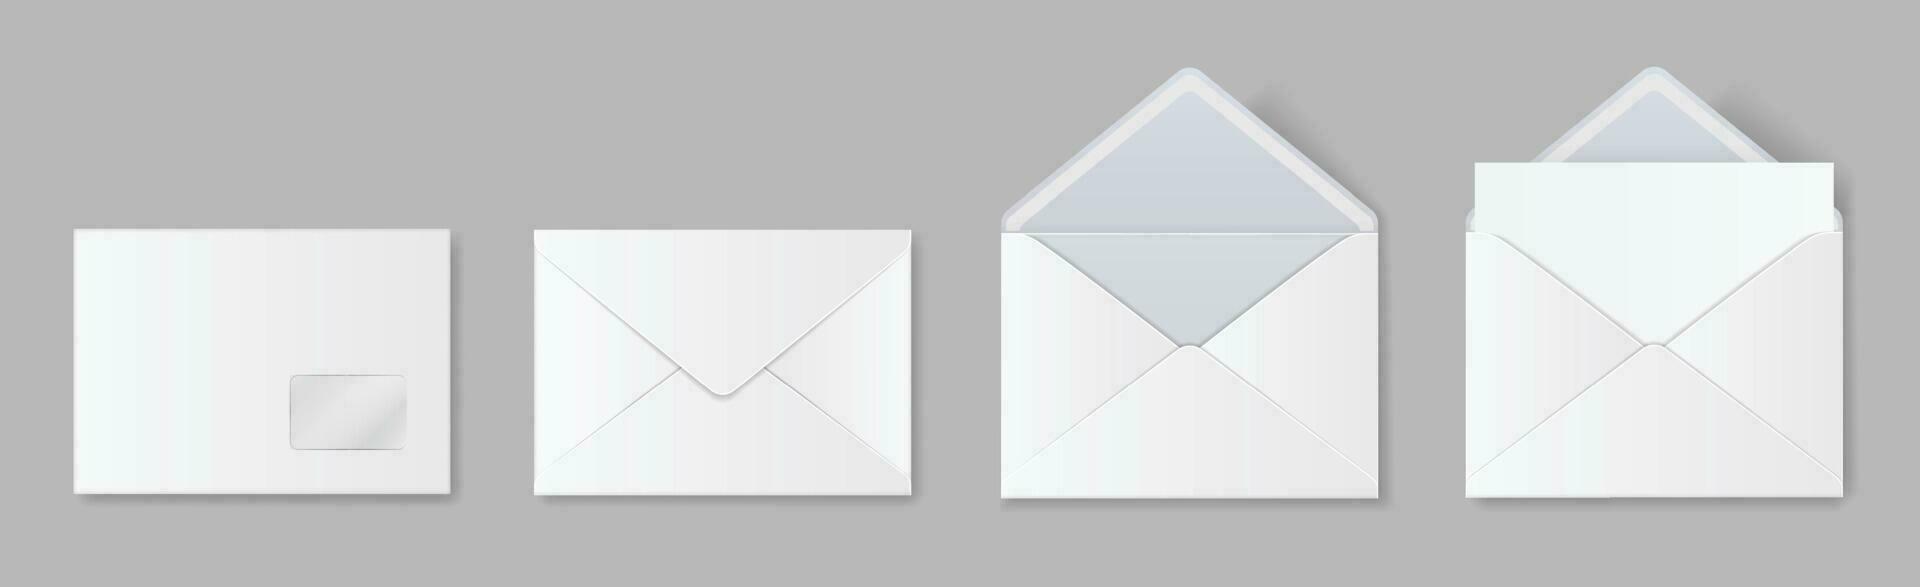 realistisch leer Weiß Briefumschlag Attrappe, Lehrmodell, Simulation, öffnen und geschlossen Umschläge. Post- Brief Einladung, Papier Mail Vorlage Vorderseite und zurück Aussicht Vektor einstellen